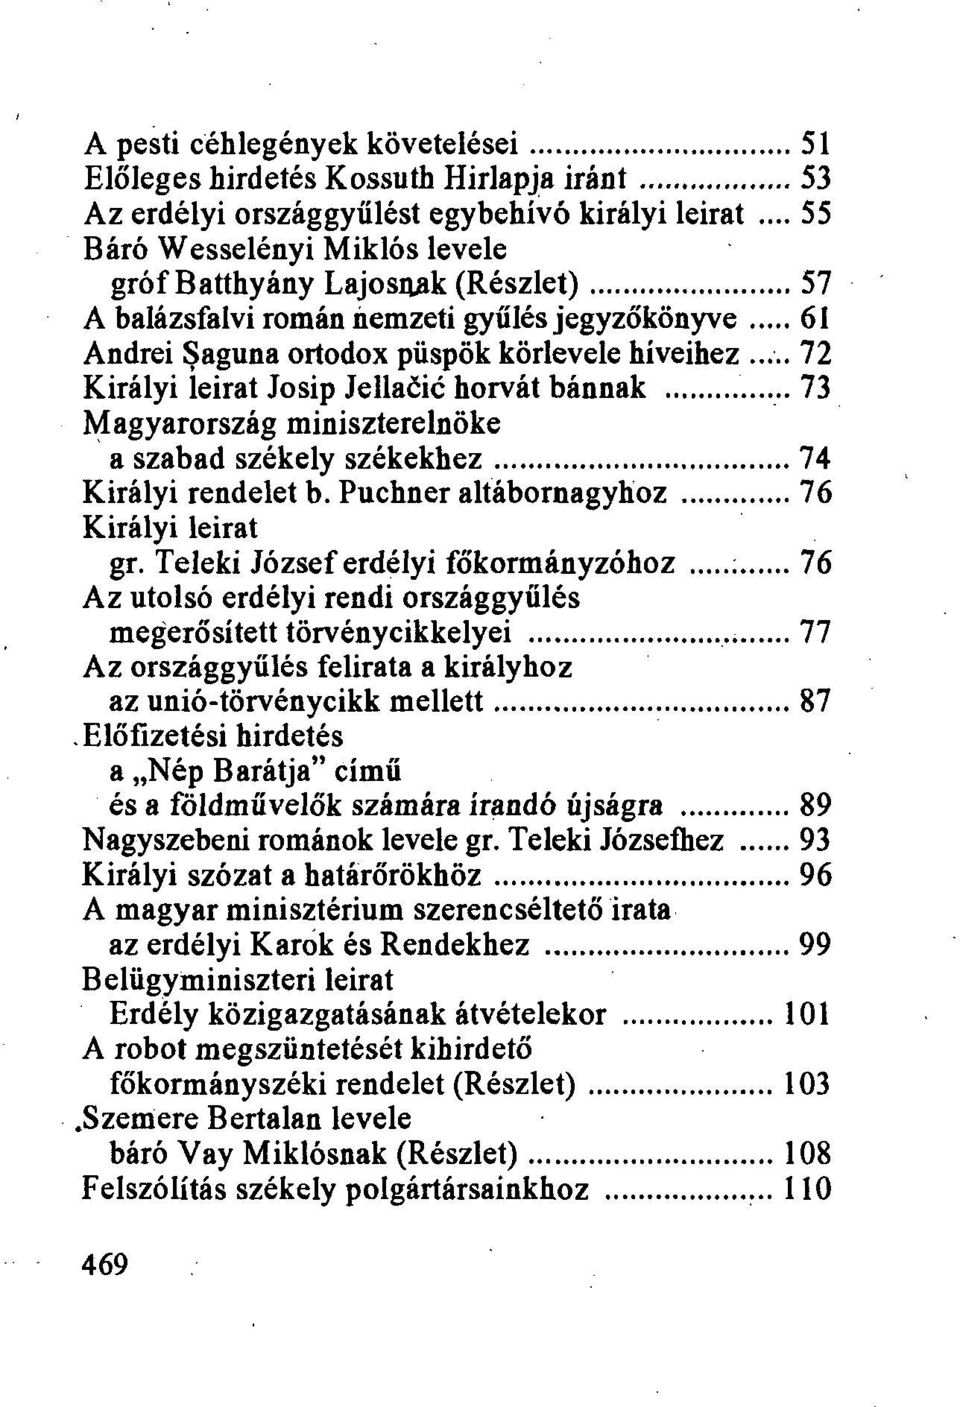 .. 72 Királyi ieirat Josip Jellaőic horvát bánnak 73 Magyarország miniszterelnöke a szabad székely székekhez 74 Királyi rendelet b. Puchner altábornagyhoz 76 Királyi leirat gr.